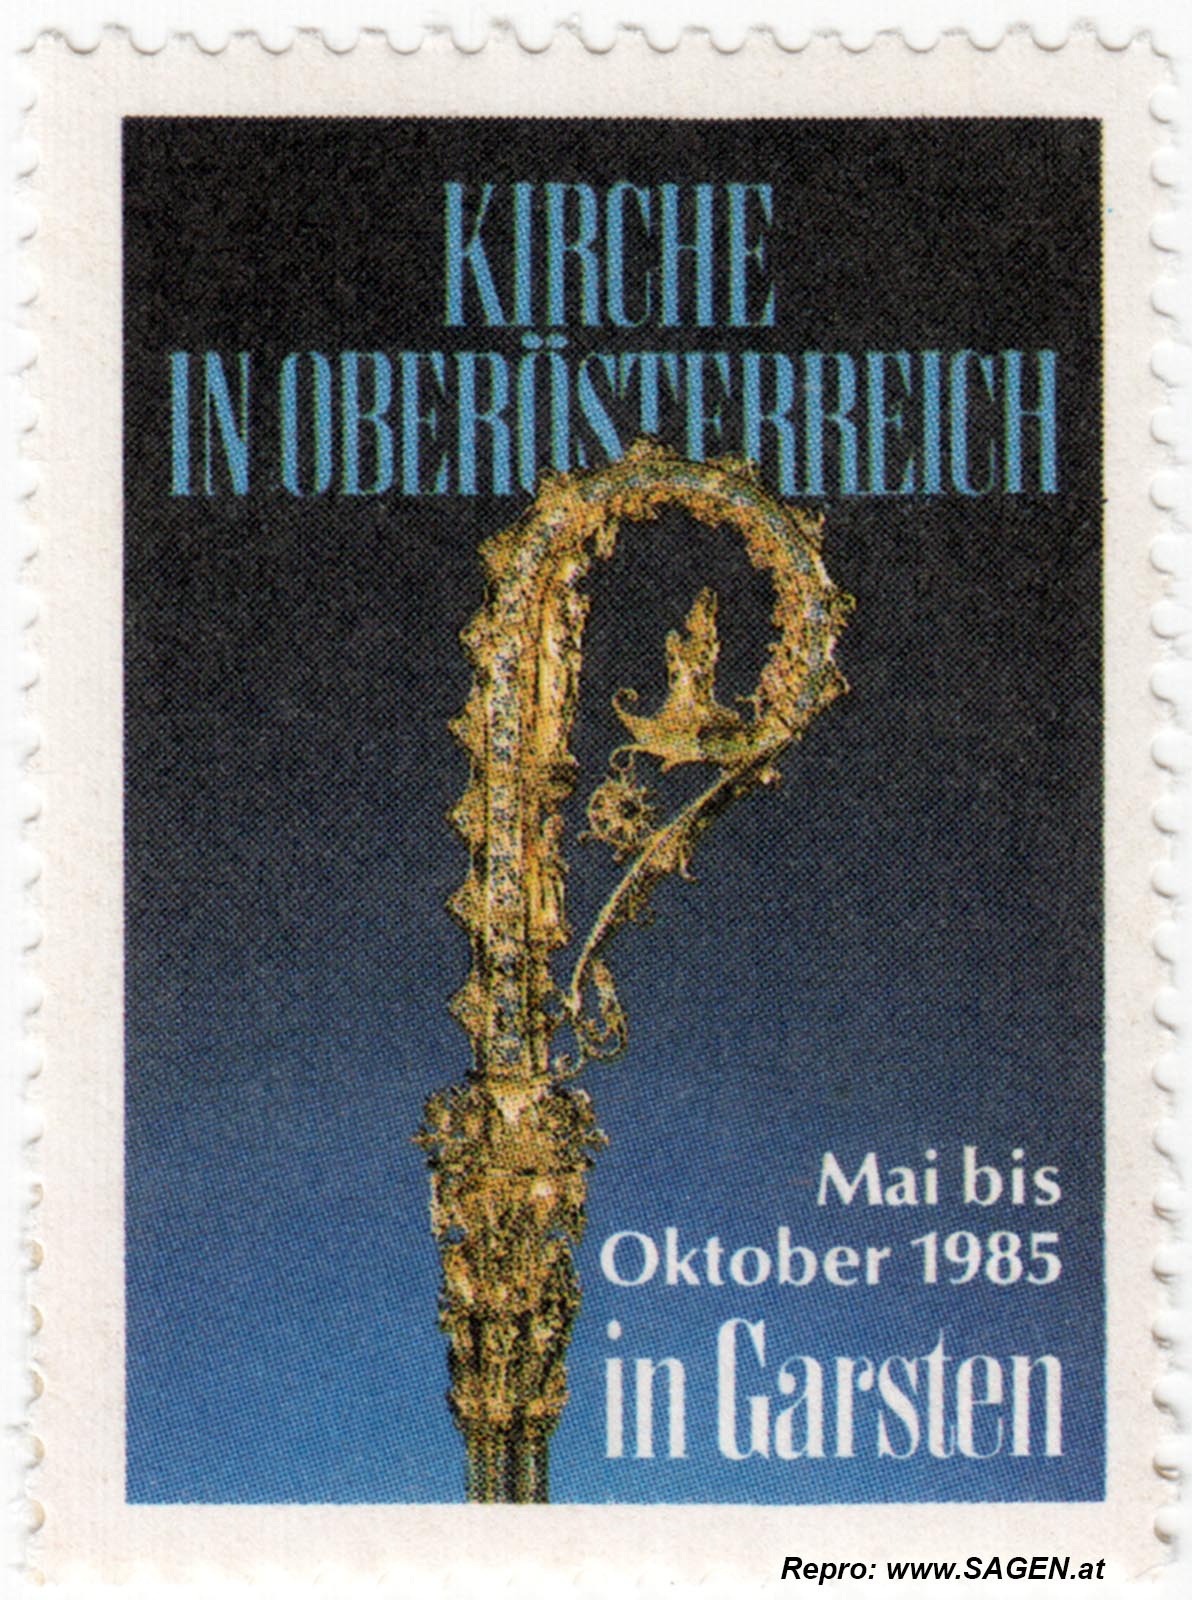 Reklamemarke Kirche in Oberösterreich, Landesausstellung 1985